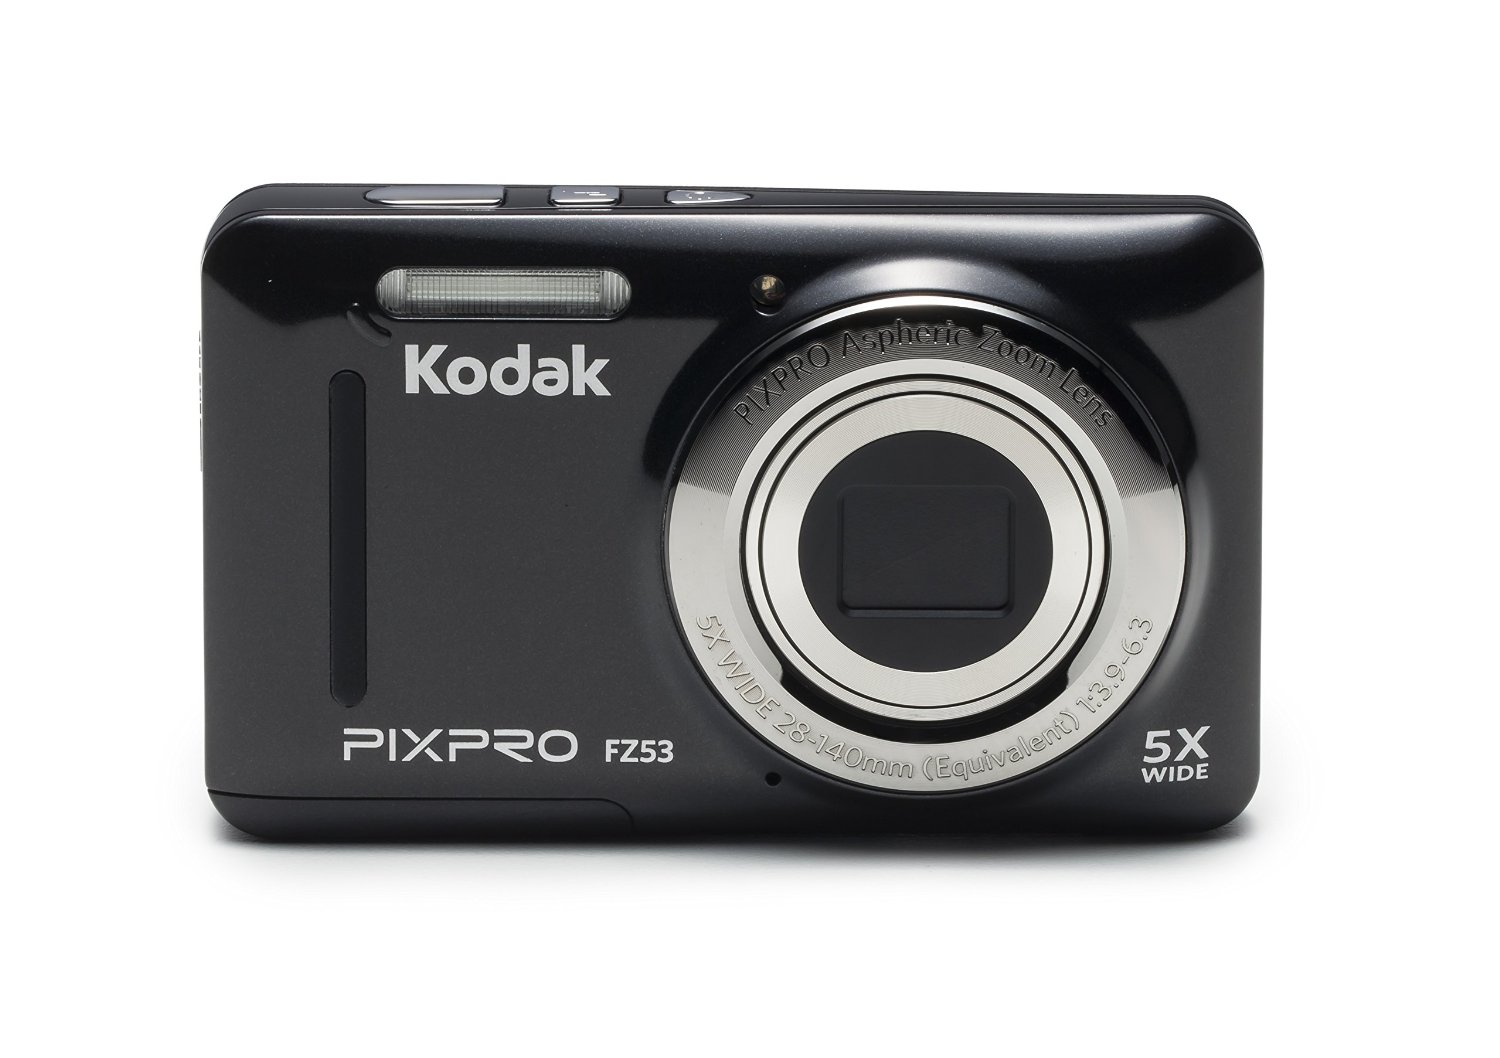 Kodak PIXPRO FZ53 16.2 Megapixel Compact Camera - Black